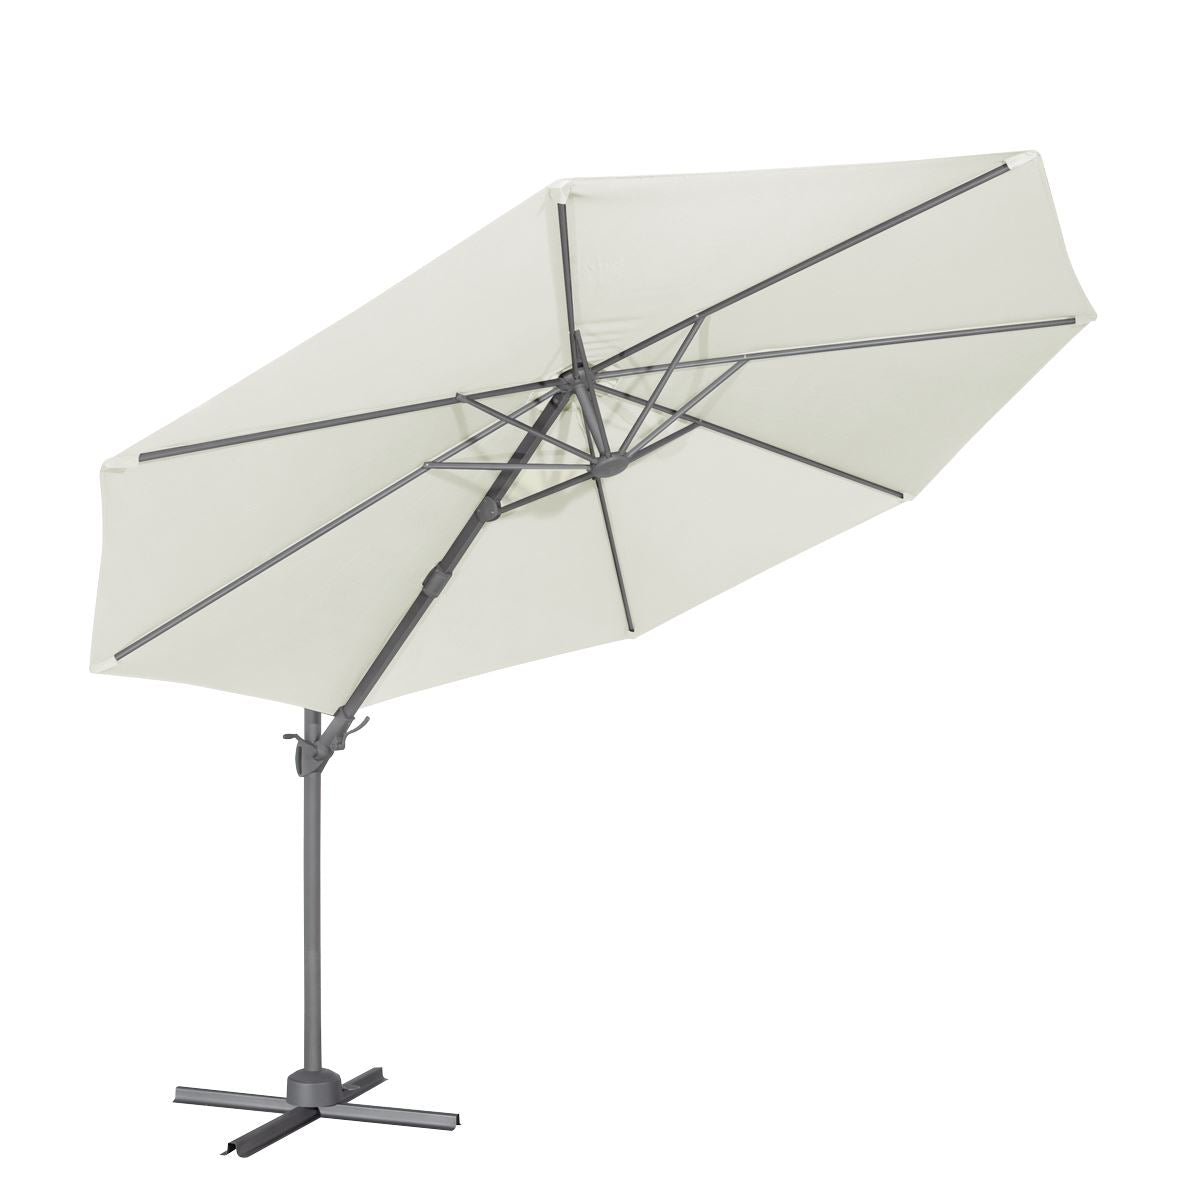 Dellonda Ø3m Garden/Patio Cantilever Parasol/Umbrella with Crank Handle, 360° Rotation, Tilt and Cover, Cream